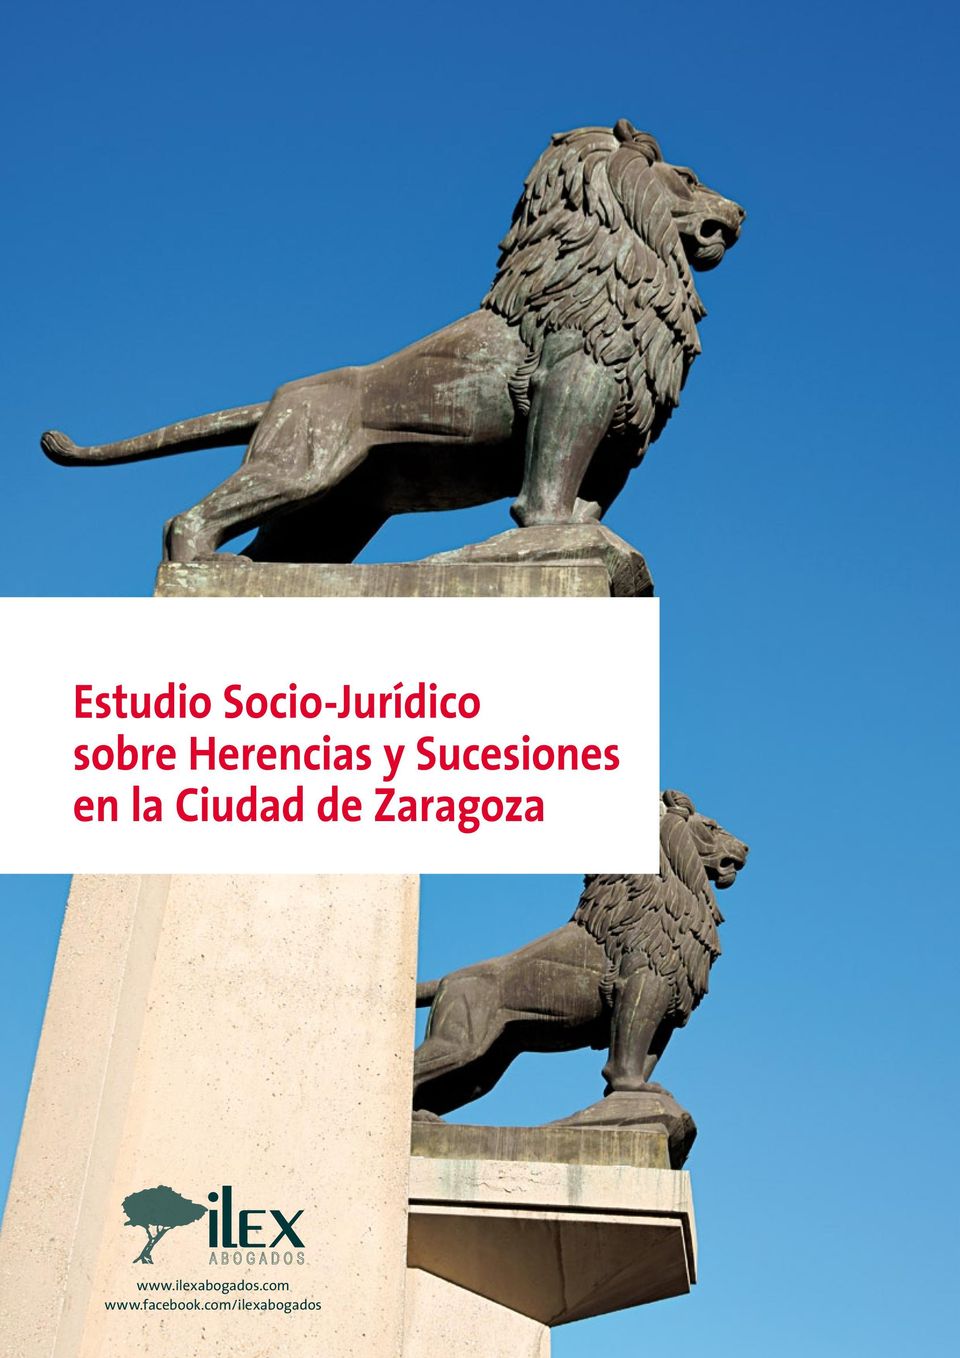 Ciudad de Zaragoza www.